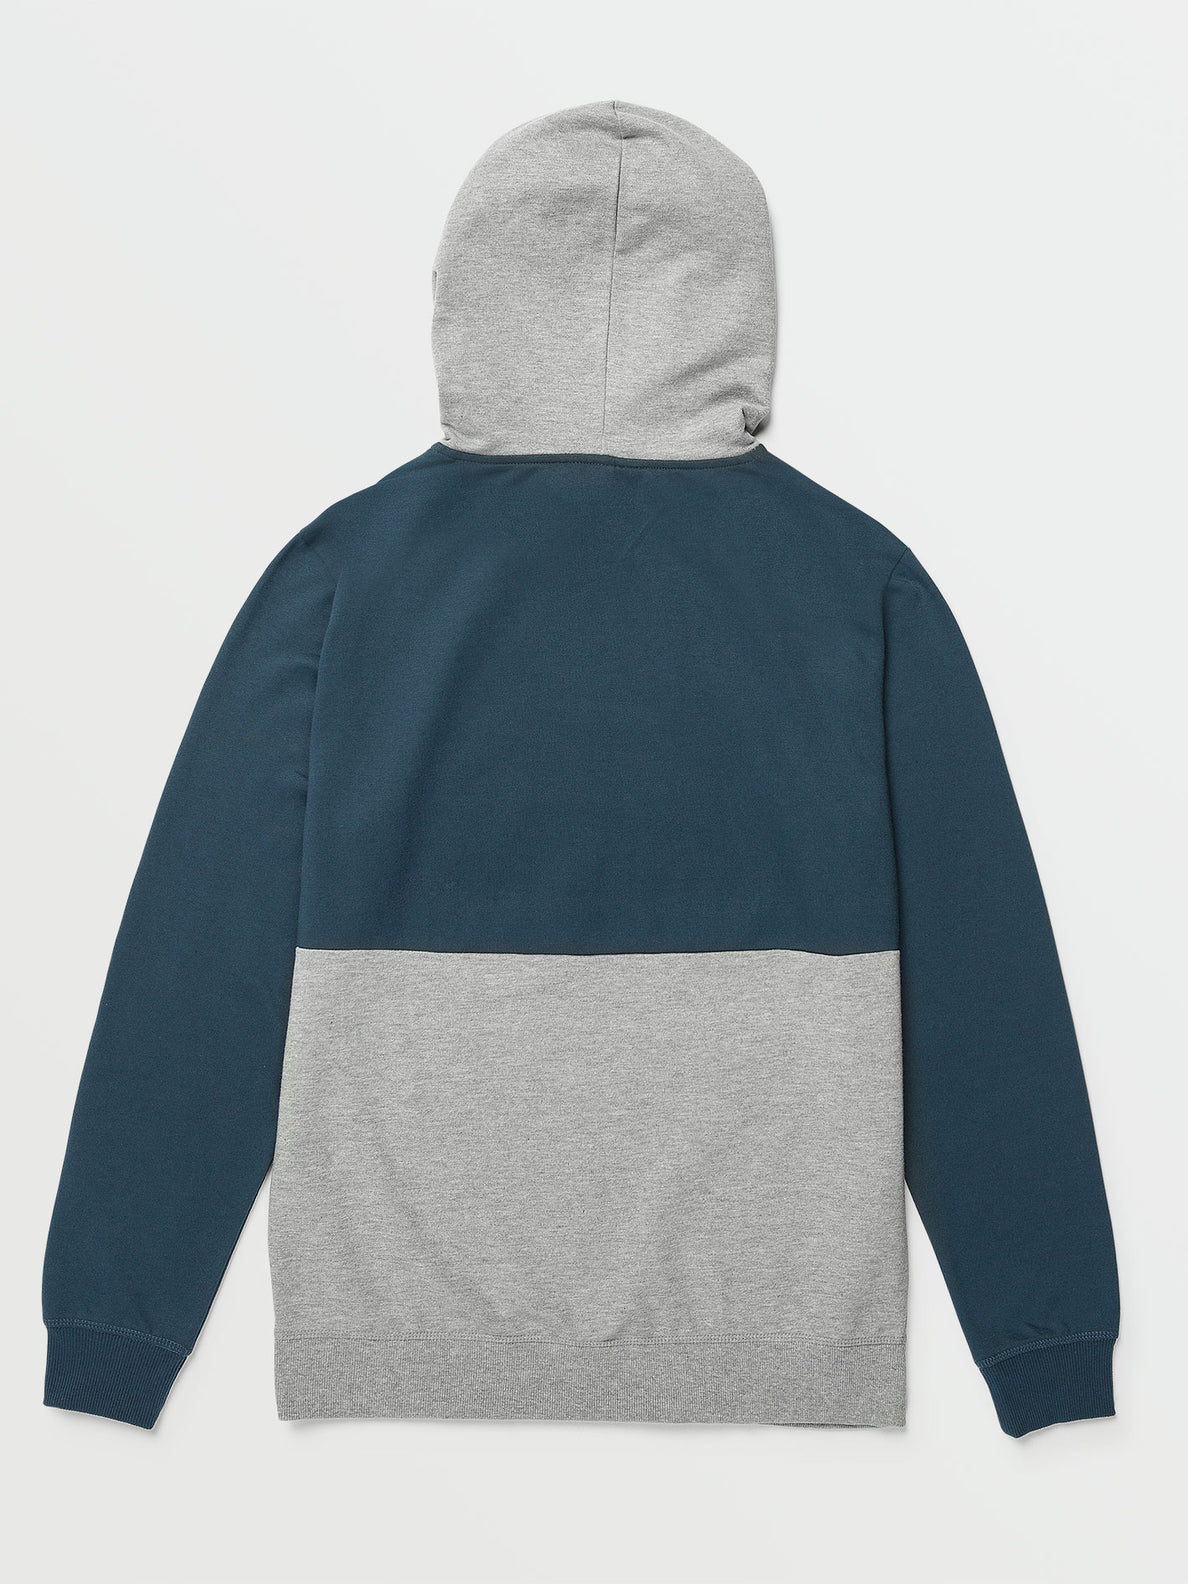 Contrast Pullover Fleece Sweatshirt - Navy Paint